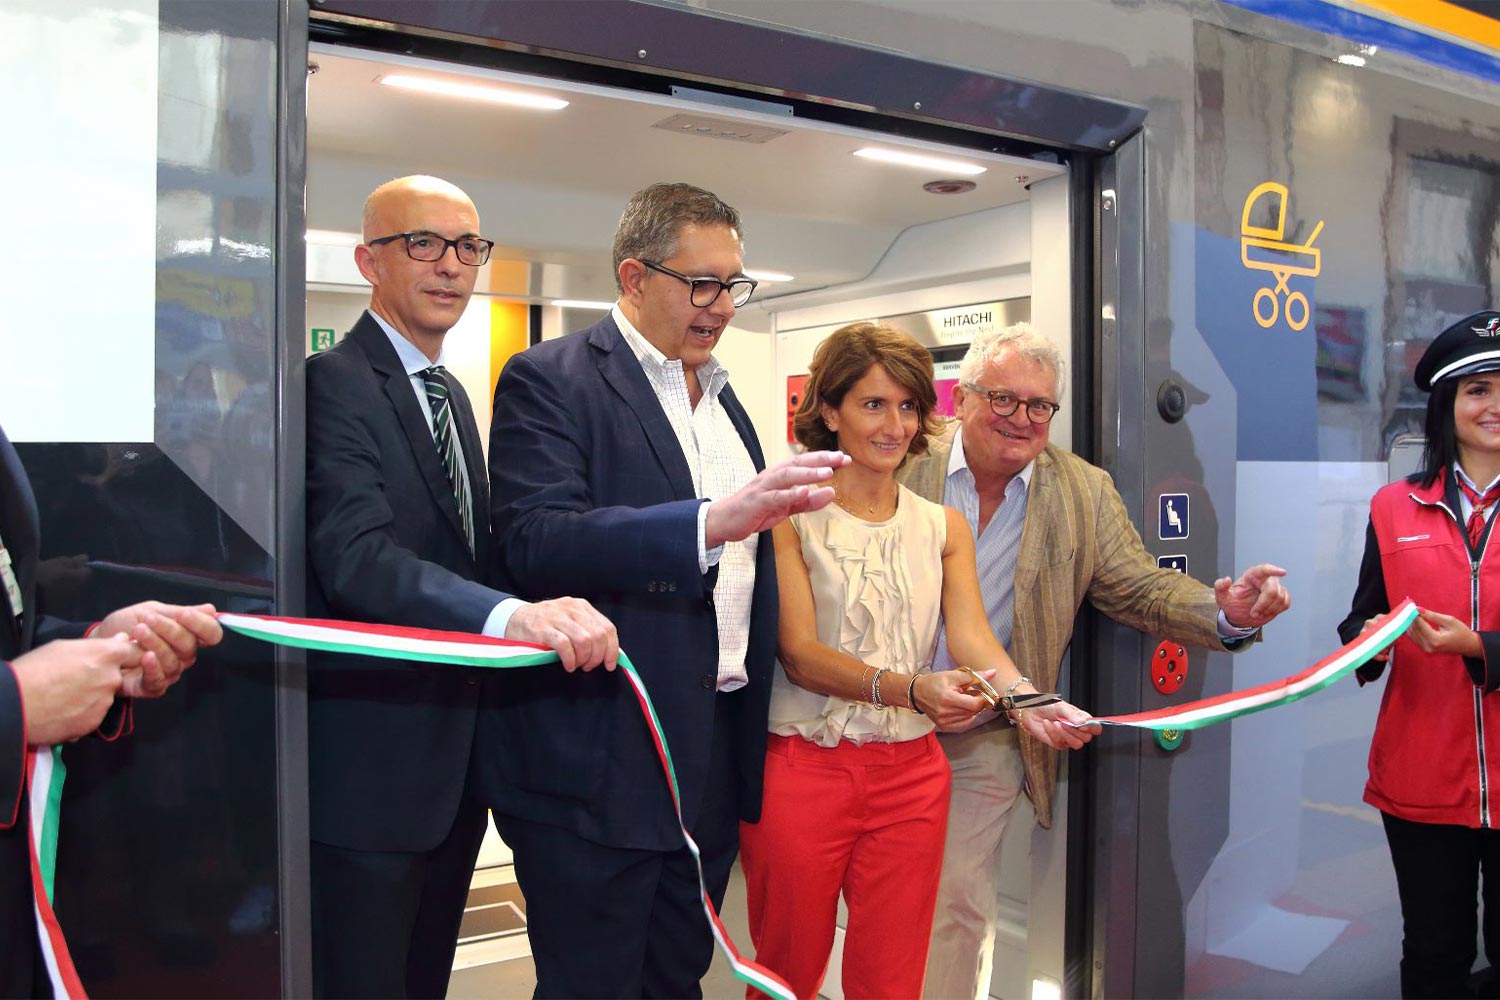 L'inaugurazione dei due treni Rock alla Stazione di Genova